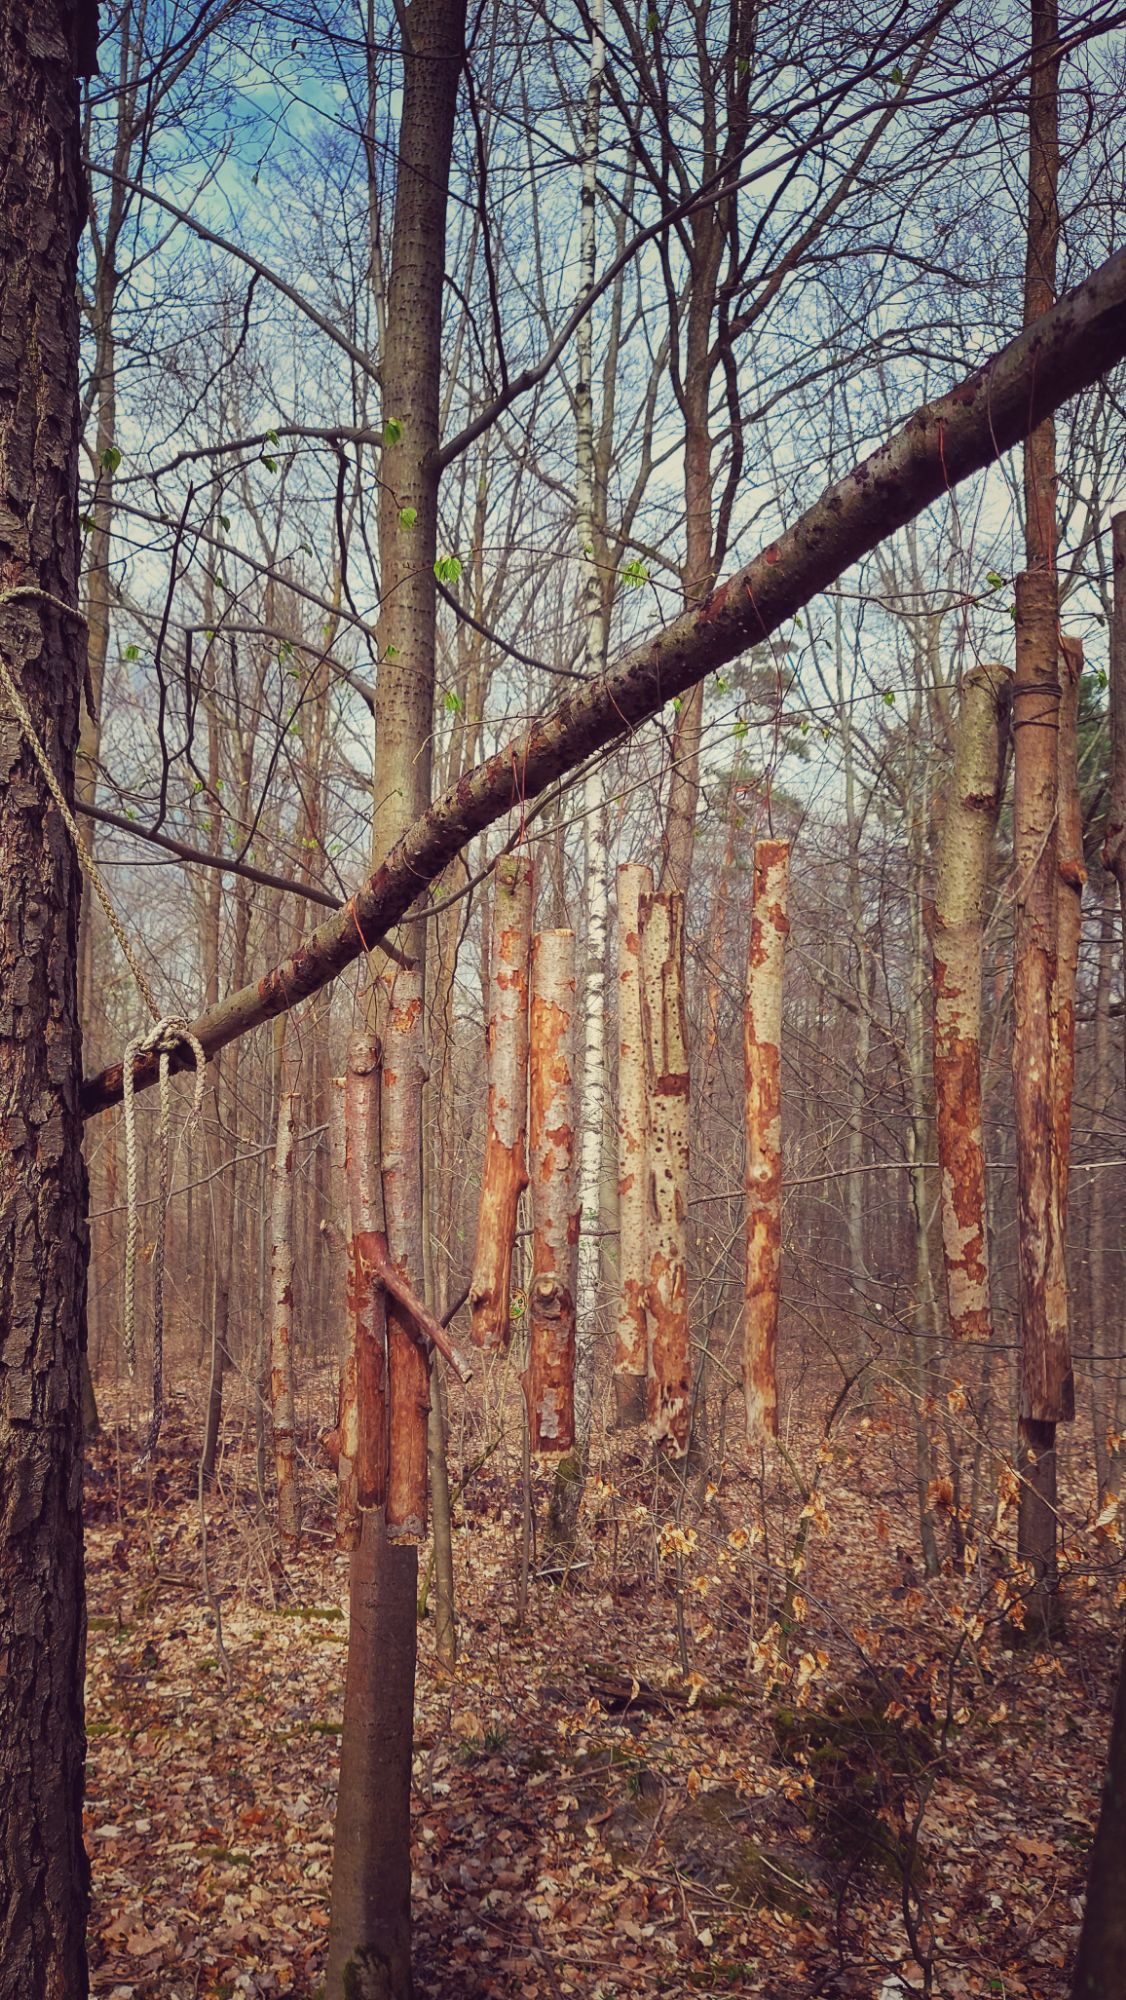 Forest art, an instrument made of wooden sticks between trees.